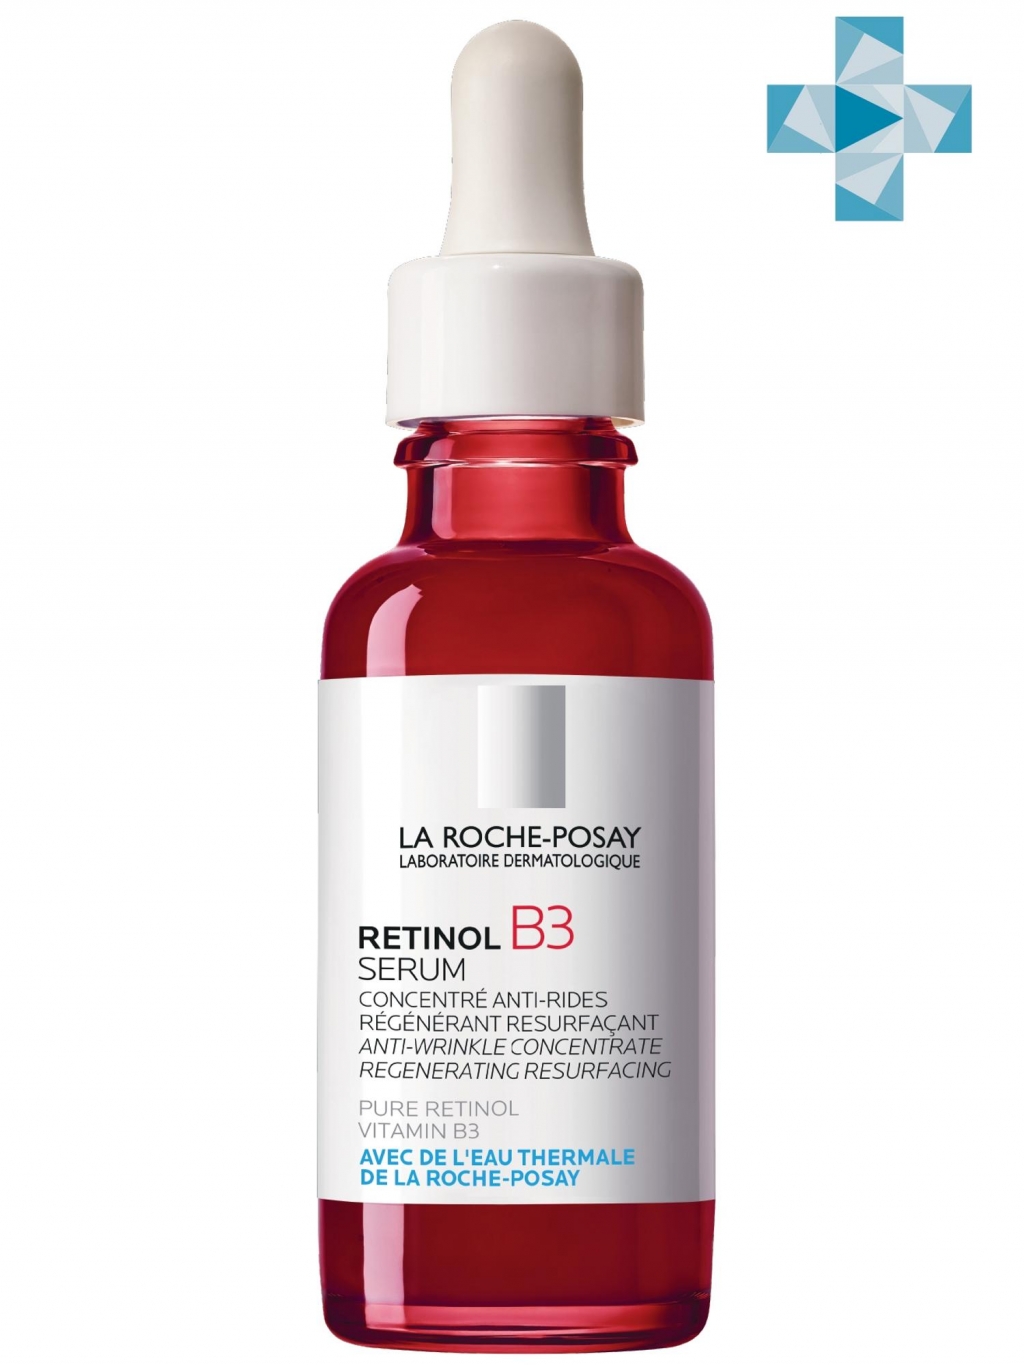 La Roche-Posay Интенсивная сыворотка против глубоких морщин, для выравнивания цвета лица и текстуры кожи Retinol B3, 30 мл (La Roche-Posay, Redermic Retinol)